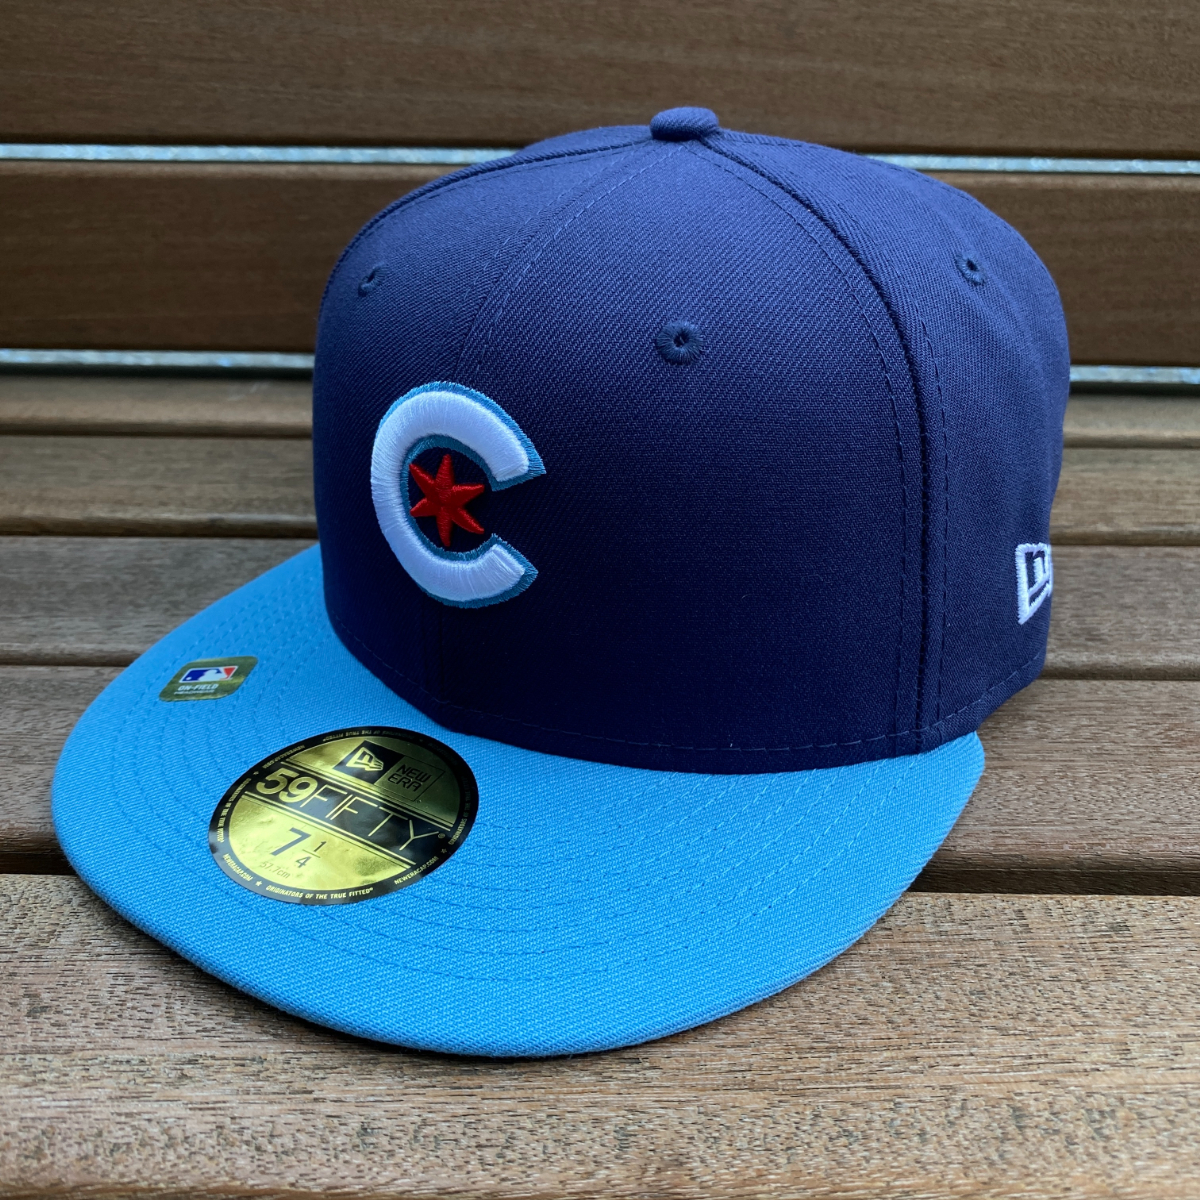 限定モデル 【7.3/4】 NEWERA ニューエラ MLB シカゴ カブス Chicago Cubs シティコネクト City Connect 59FIFTY 米国正規品 メジャー